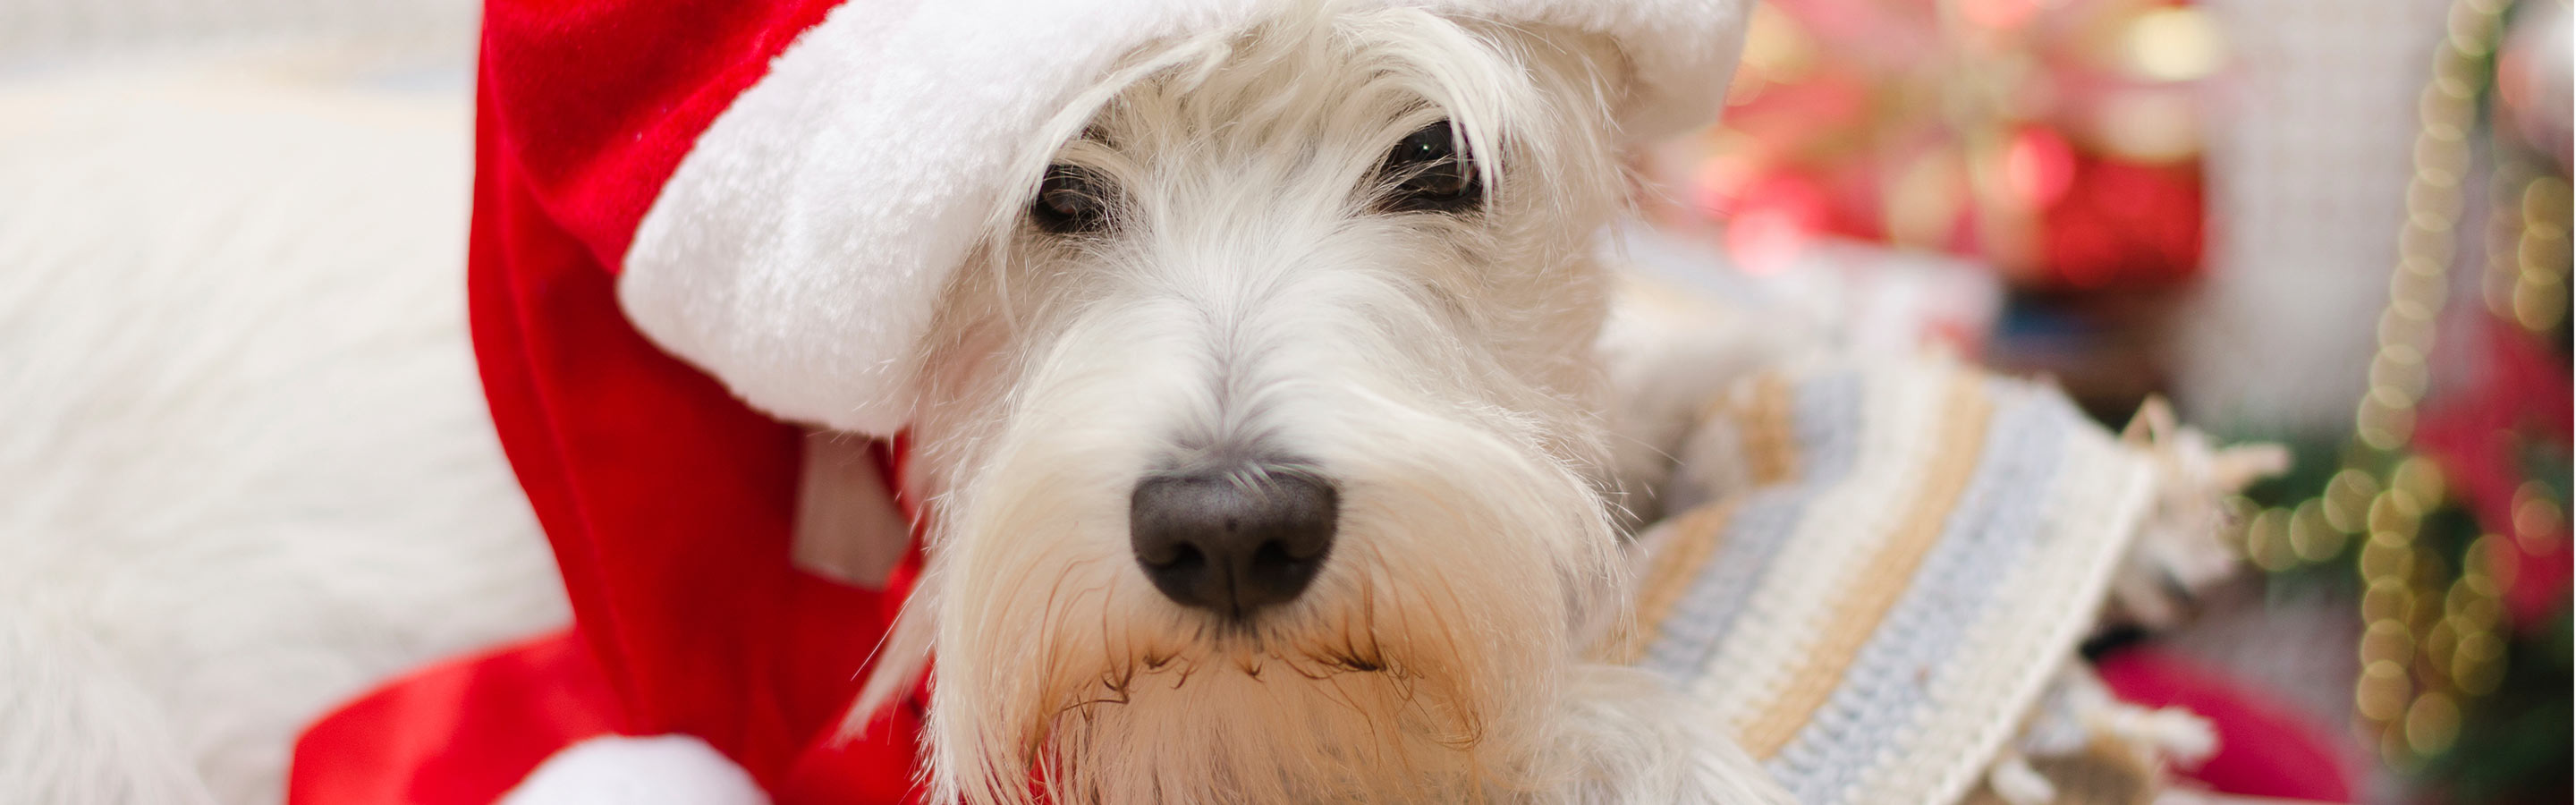 White dog in santa hat